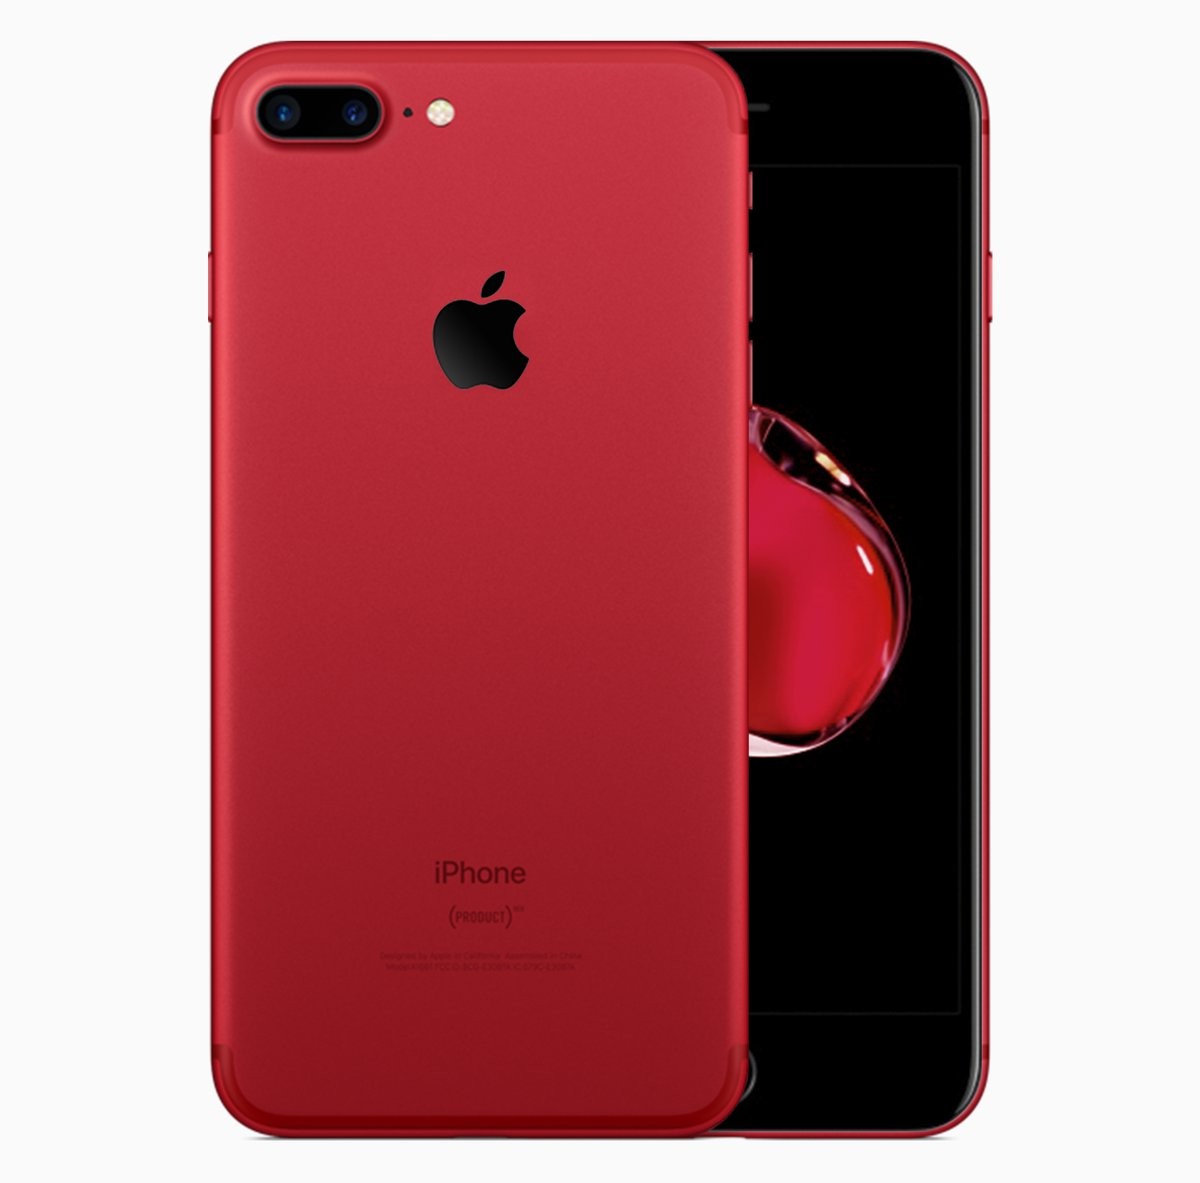 那样的鲜红色版iPhone 7才算极致：經典黑白红配